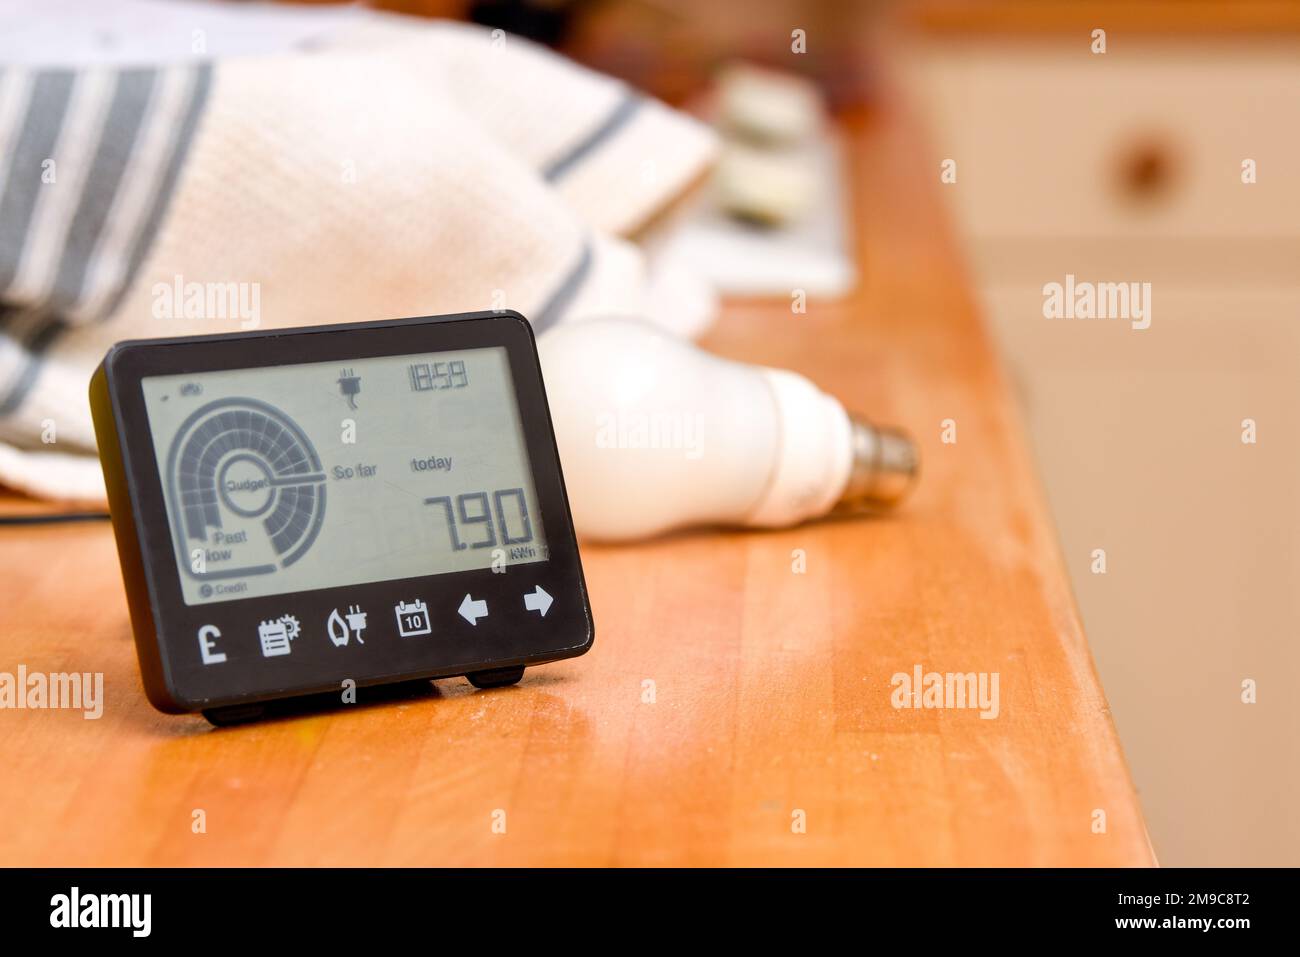 Misuratore di energia intelligente in un ambiente domestico per monitorare l'utilizzo di elettricità in casa Foto Stock